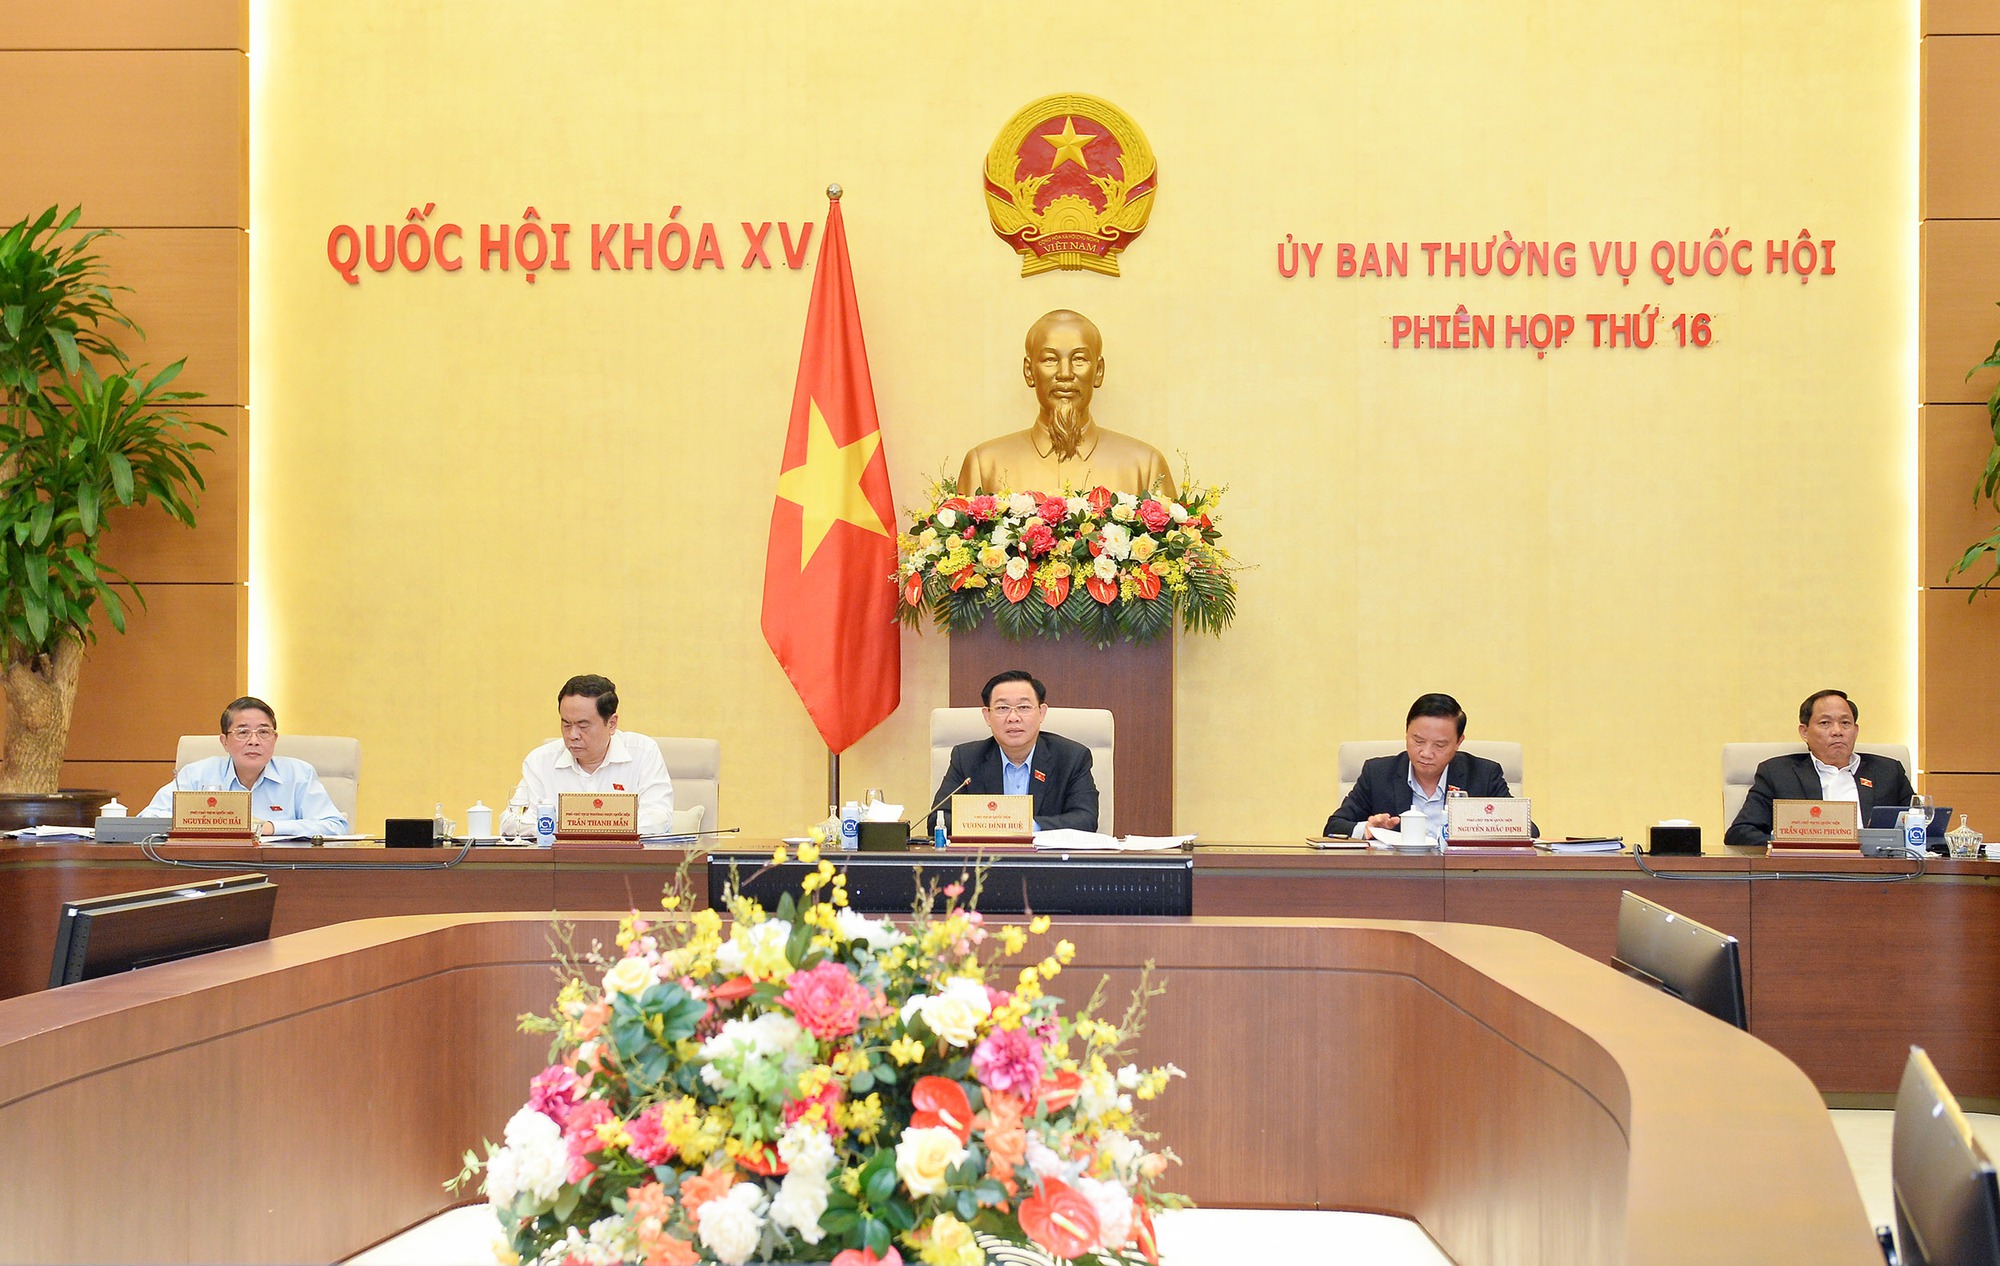 Chính sách: Cùng tìm hiểu và phân tích những chính sách mới nhất trong nhiều lĩnh vực, từ chính sách kinh tế, xã hội đến đầu tư và phát triển đất nước. Khám phá những ưu điểm của chính sách để xây dựng tương lai tốt đẹp hơn cho đất nước Việt Nam.